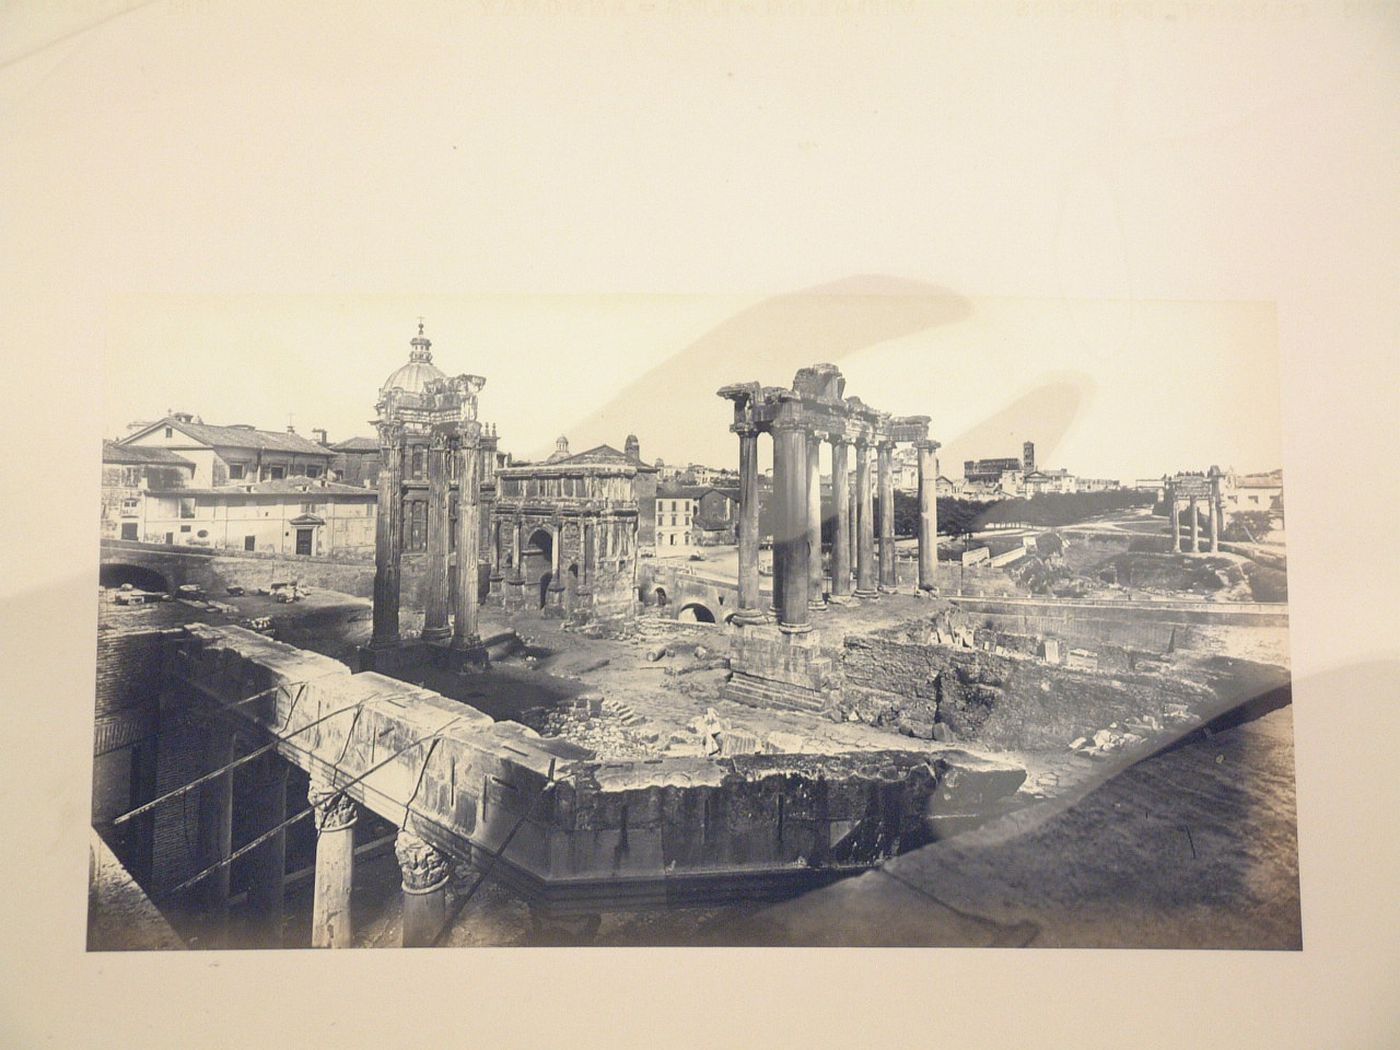 View of the Roman Forum showing the Tempio di Vespasiano, the Tempio di Saturno, the Arcus Septimii Severi, SS. Luca e Martina, and in the distance, the Colosseum, Rome, Italy